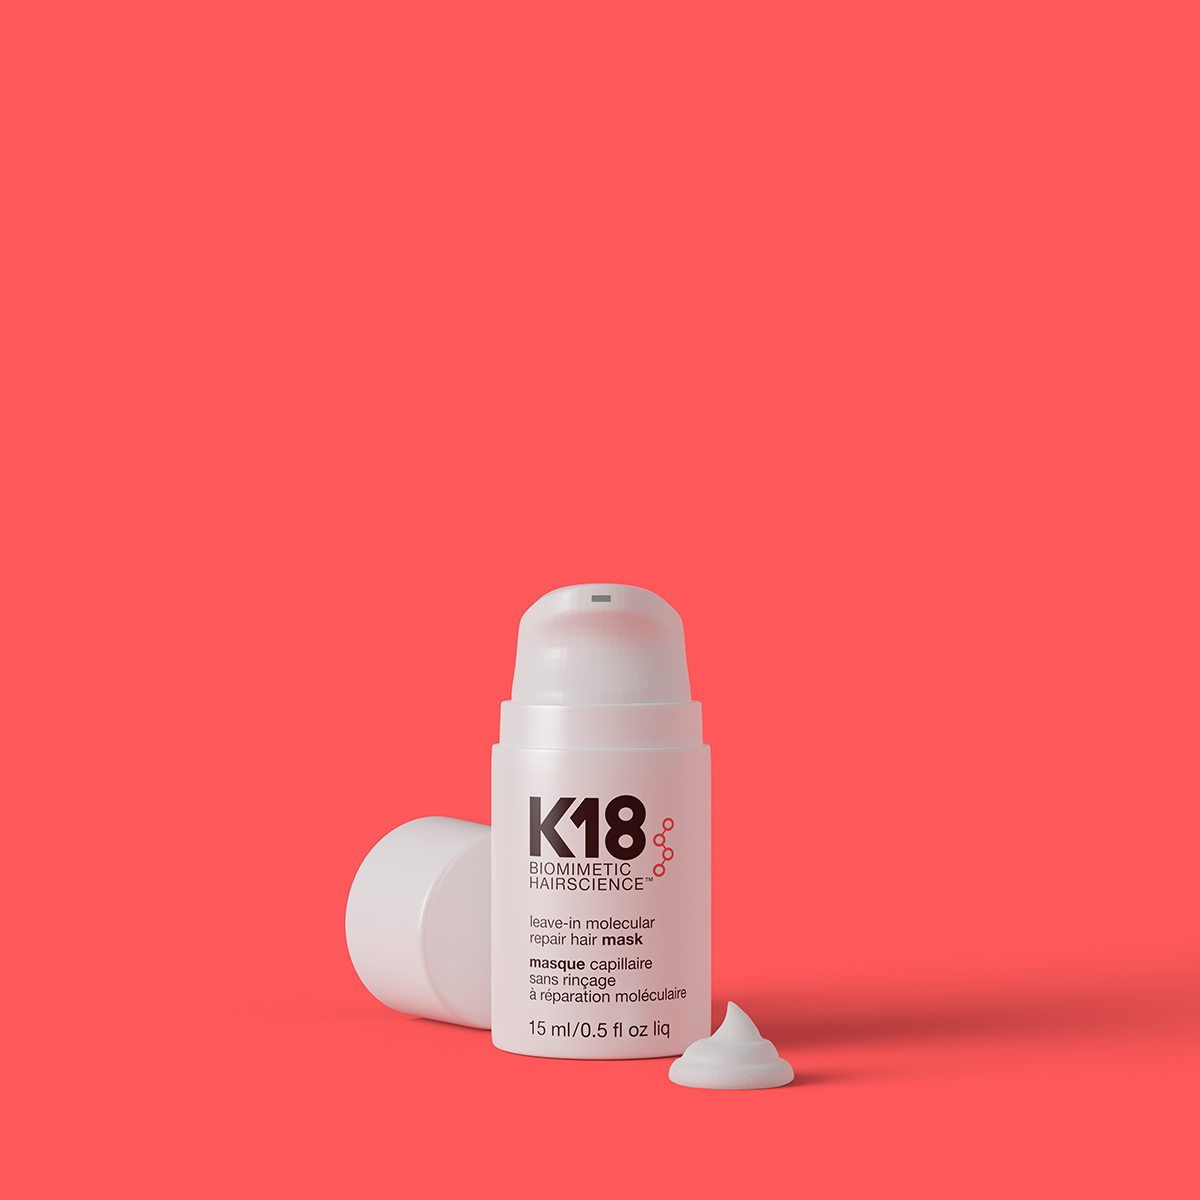 K18 Leave-in Molecular Repair Hair MASK 15ml - Hairsale.se